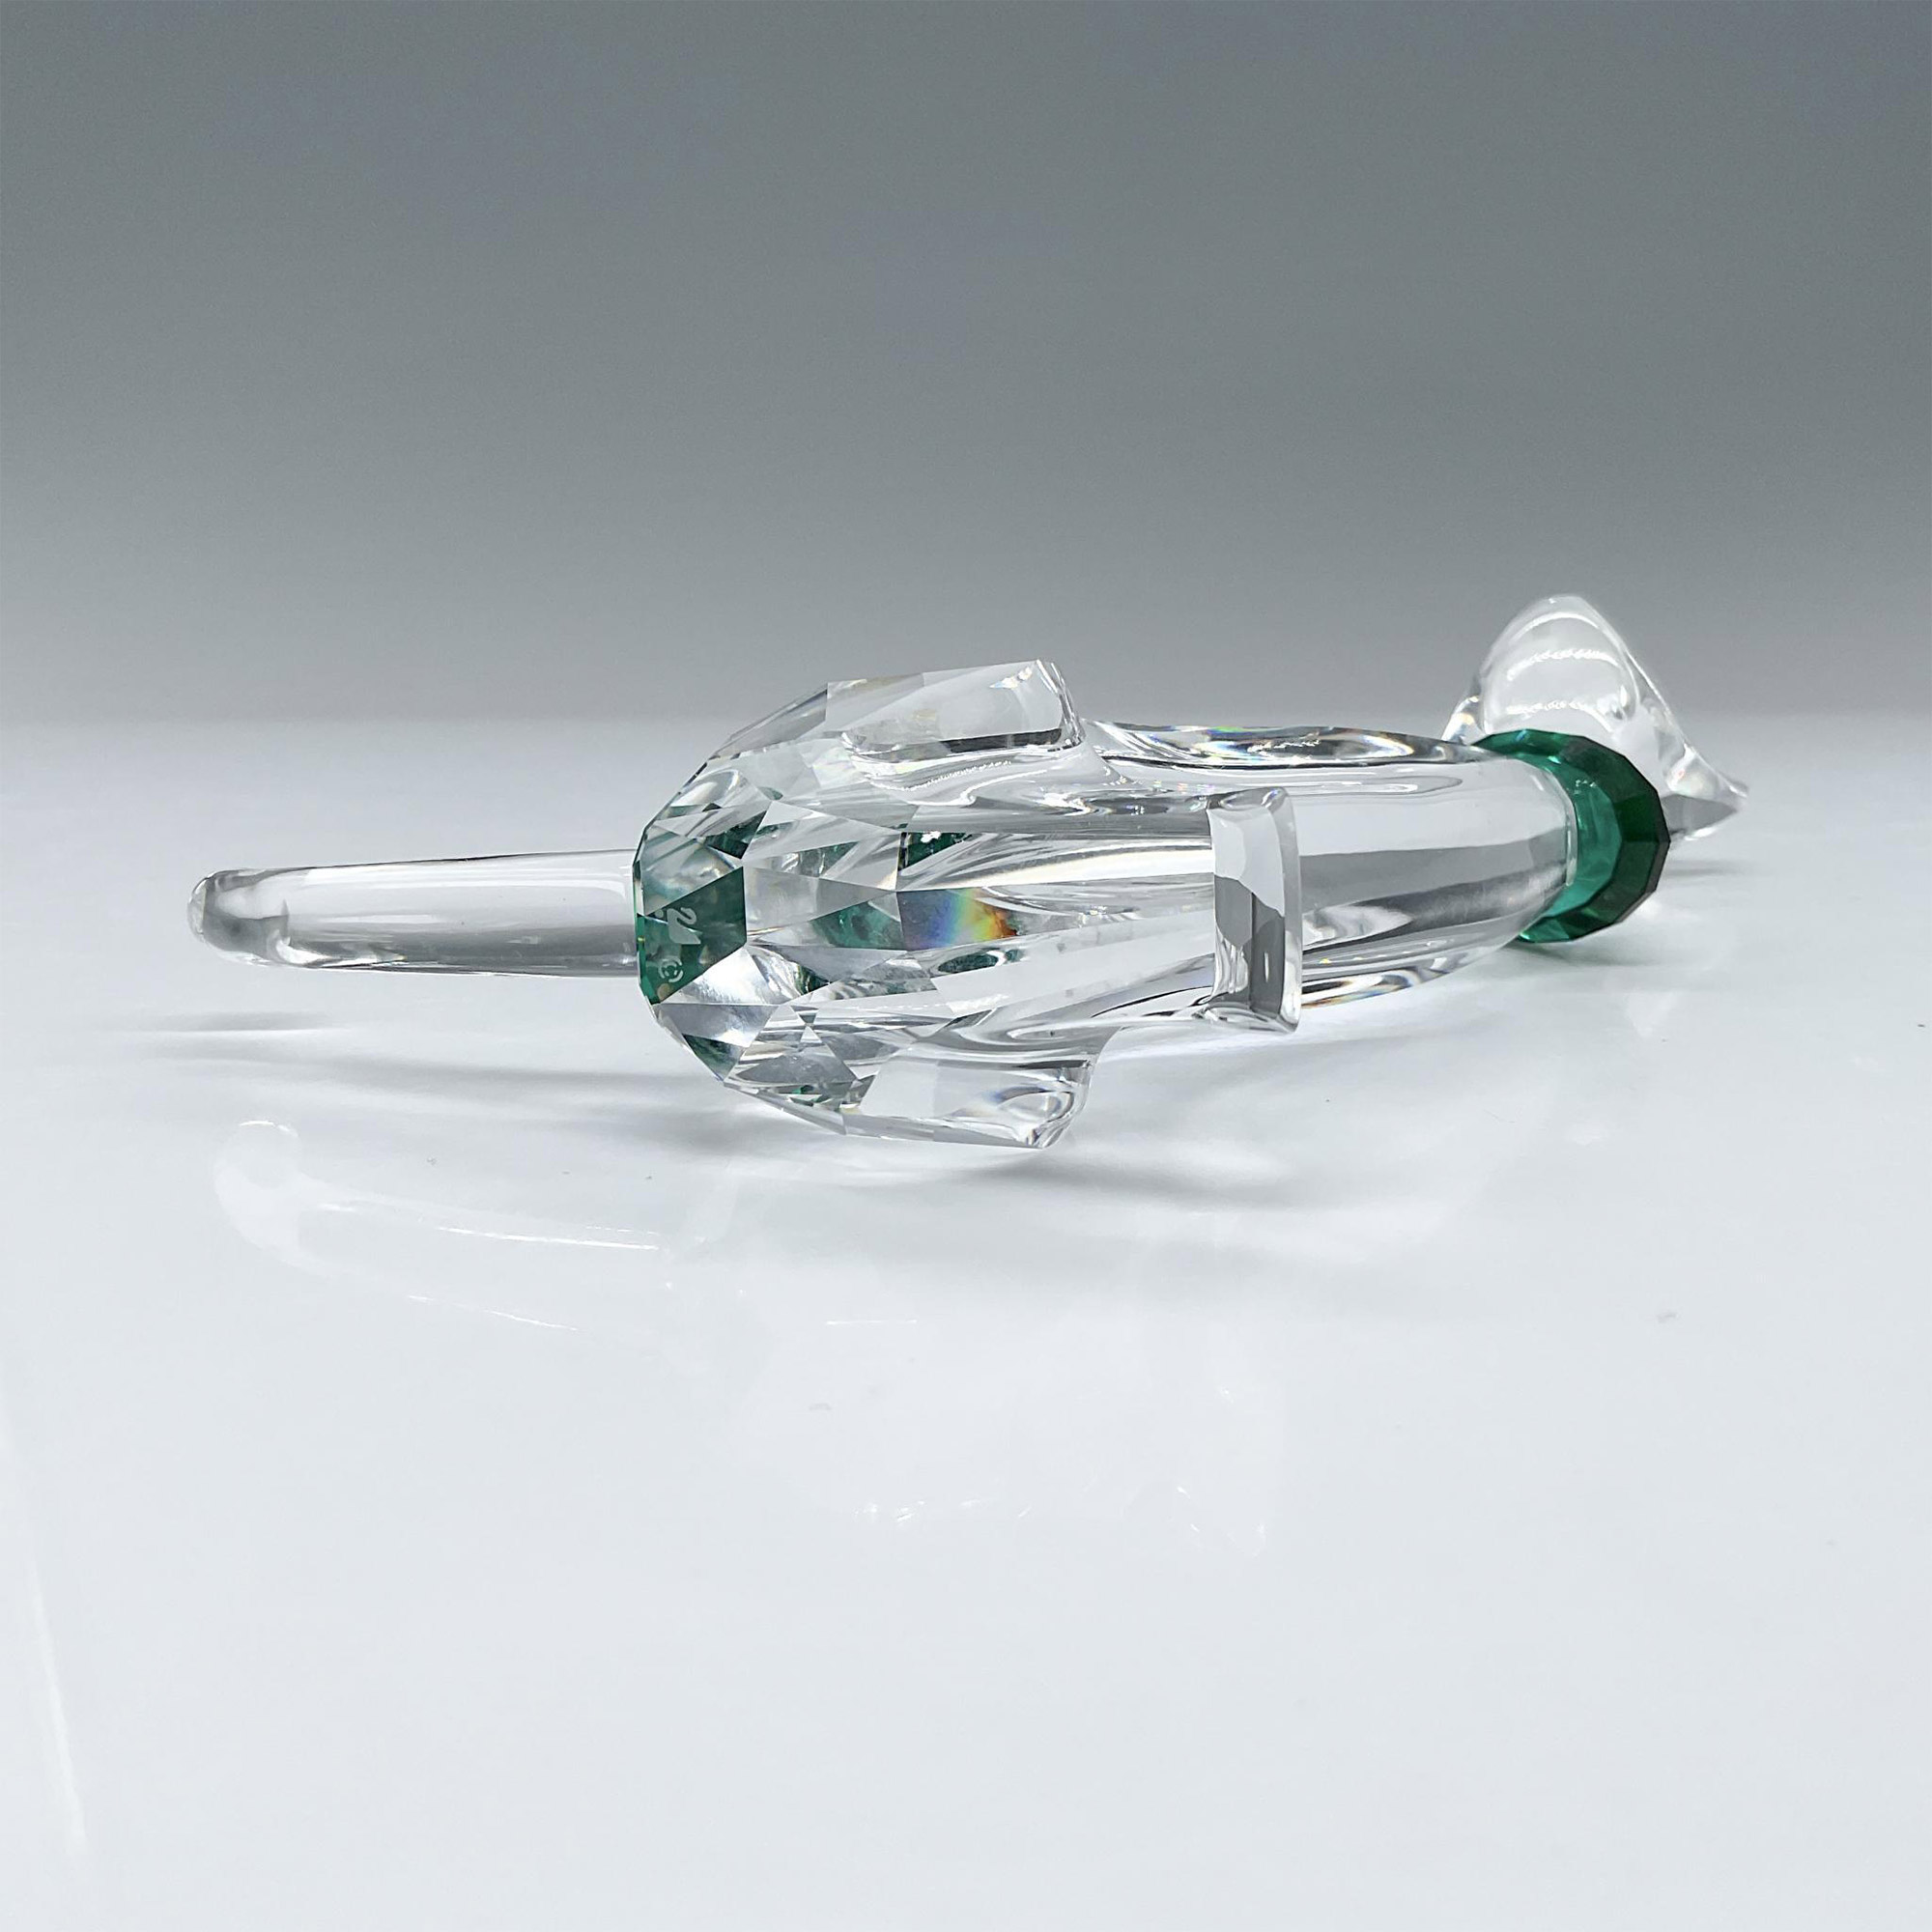 Swarovski Crystal Figurine, Cat 289478 - Image 3 of 4